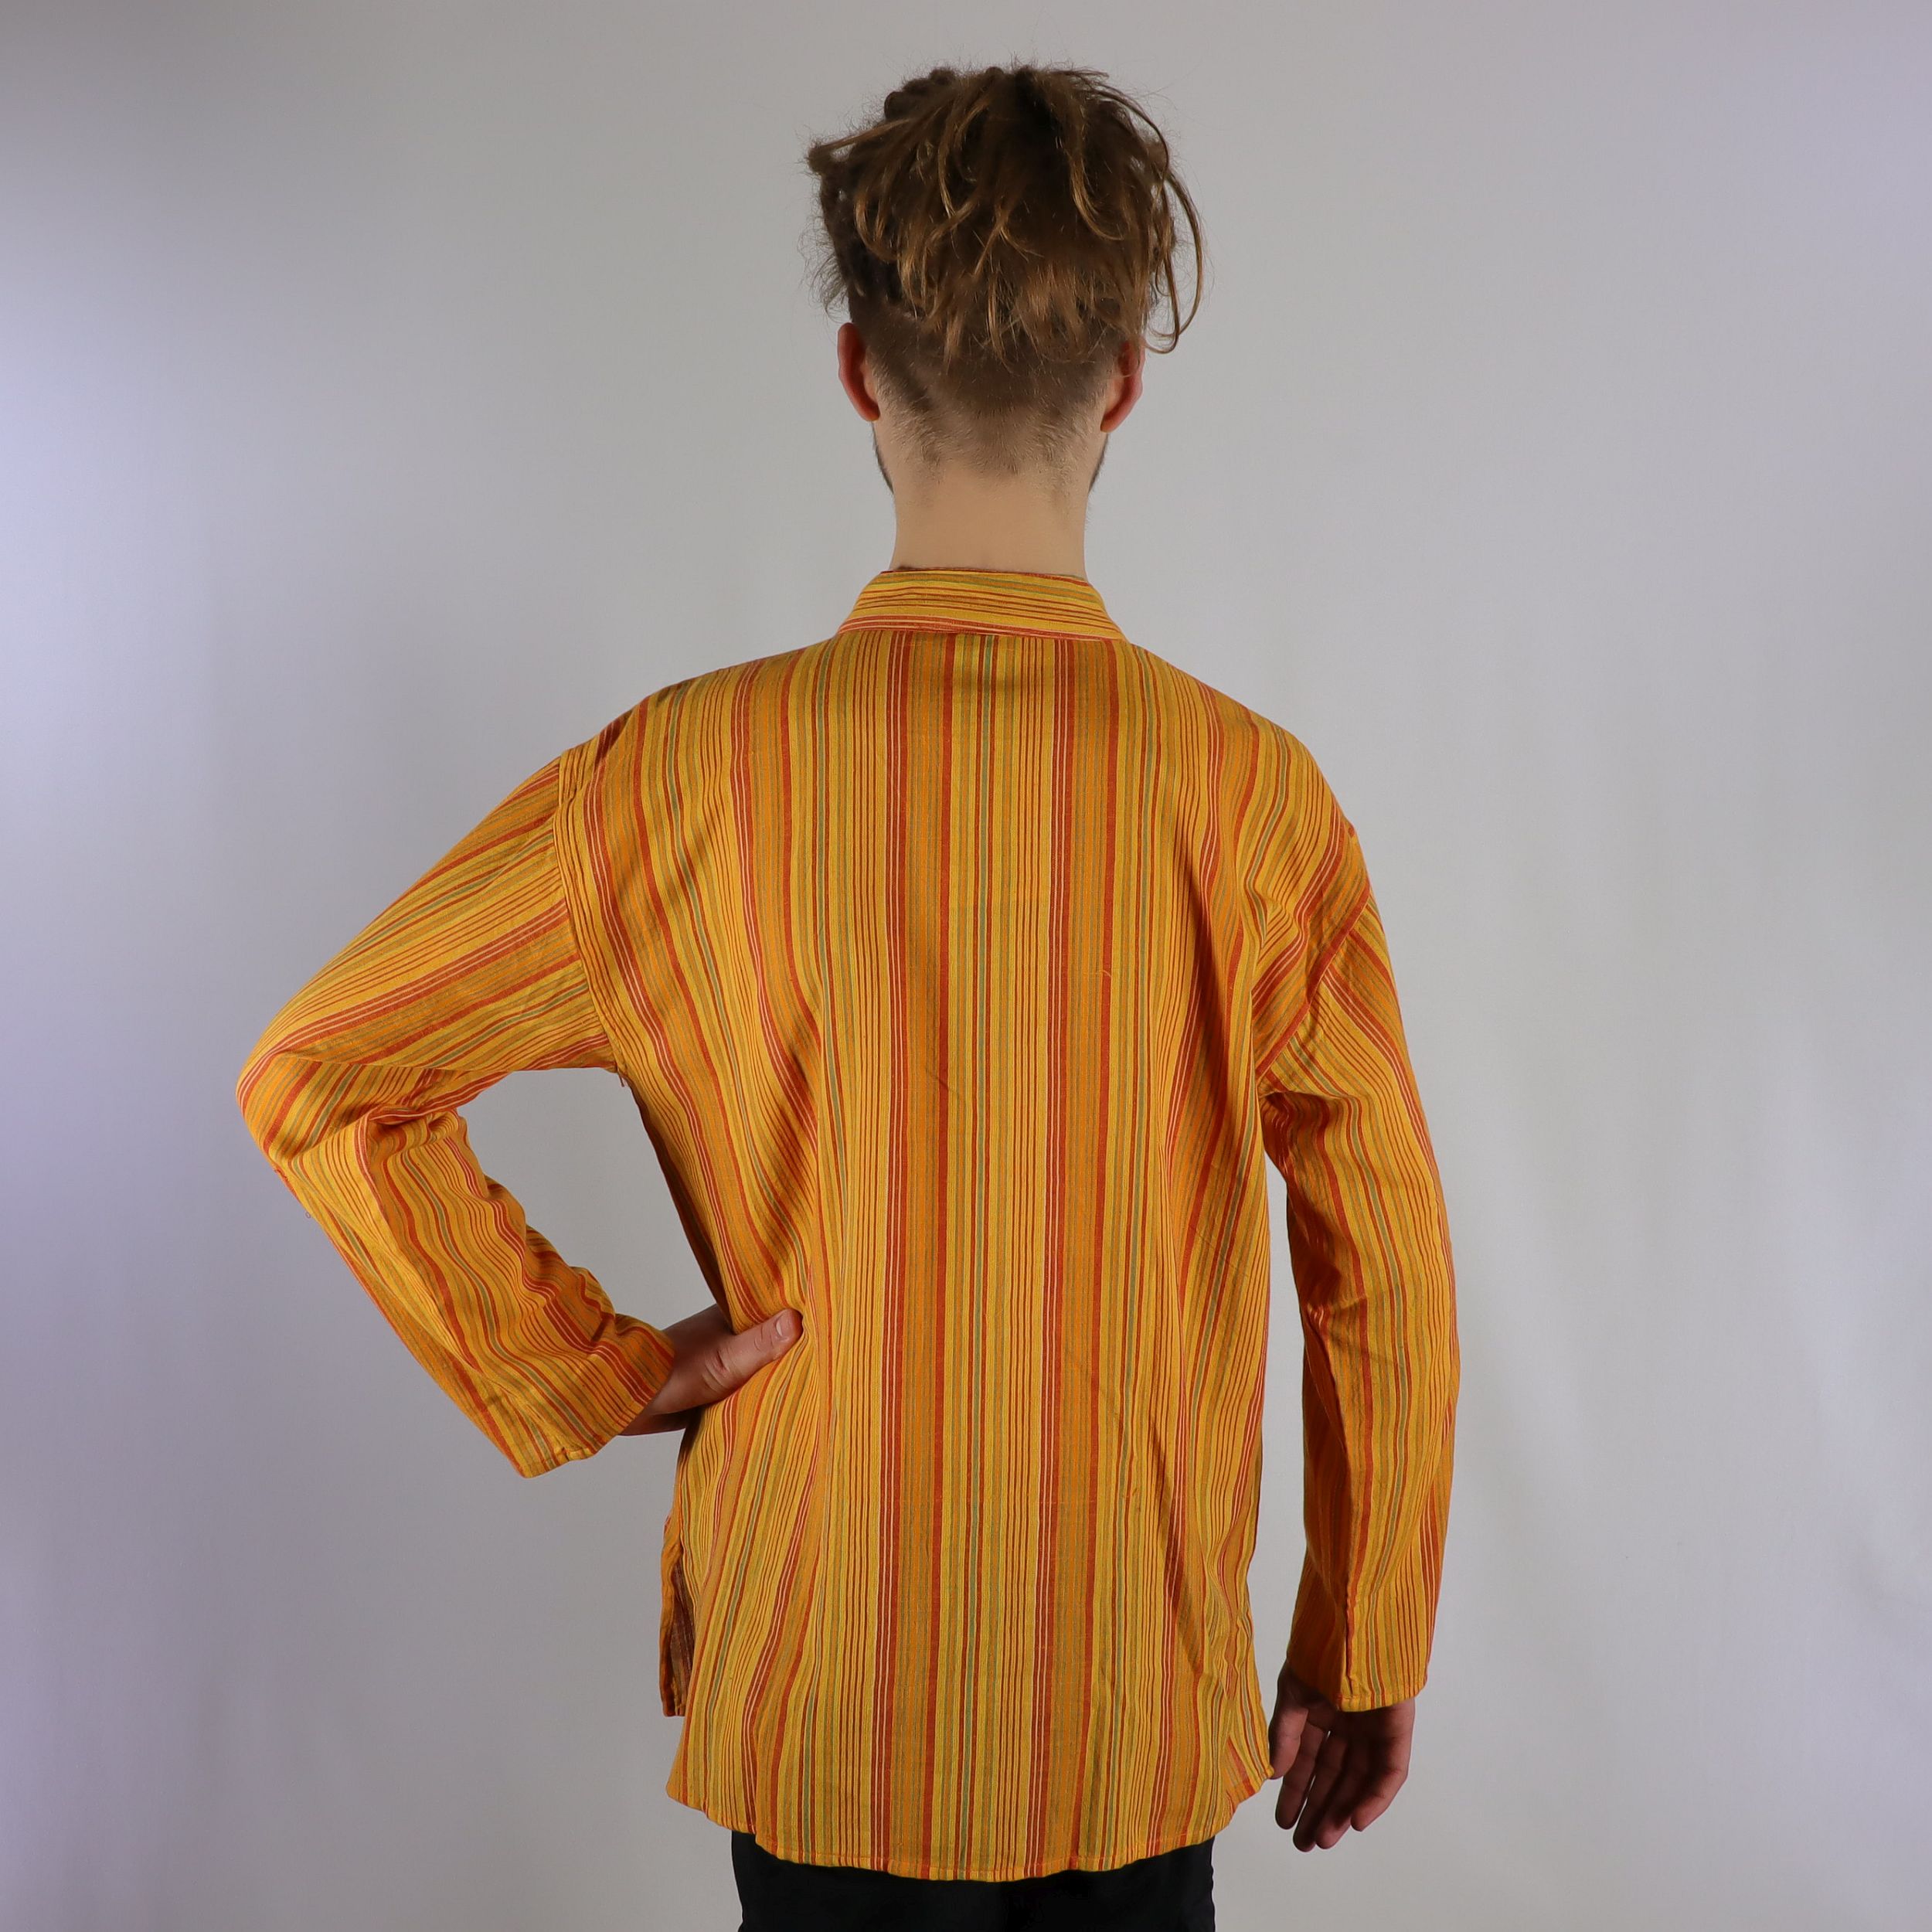 Fischer-Hemd im gestreiften Nepal Design - 100% Baumwolle - Dein leichtes Sommerhemd - bequem und farbenfroh - Fair gehandelt aus Nepal